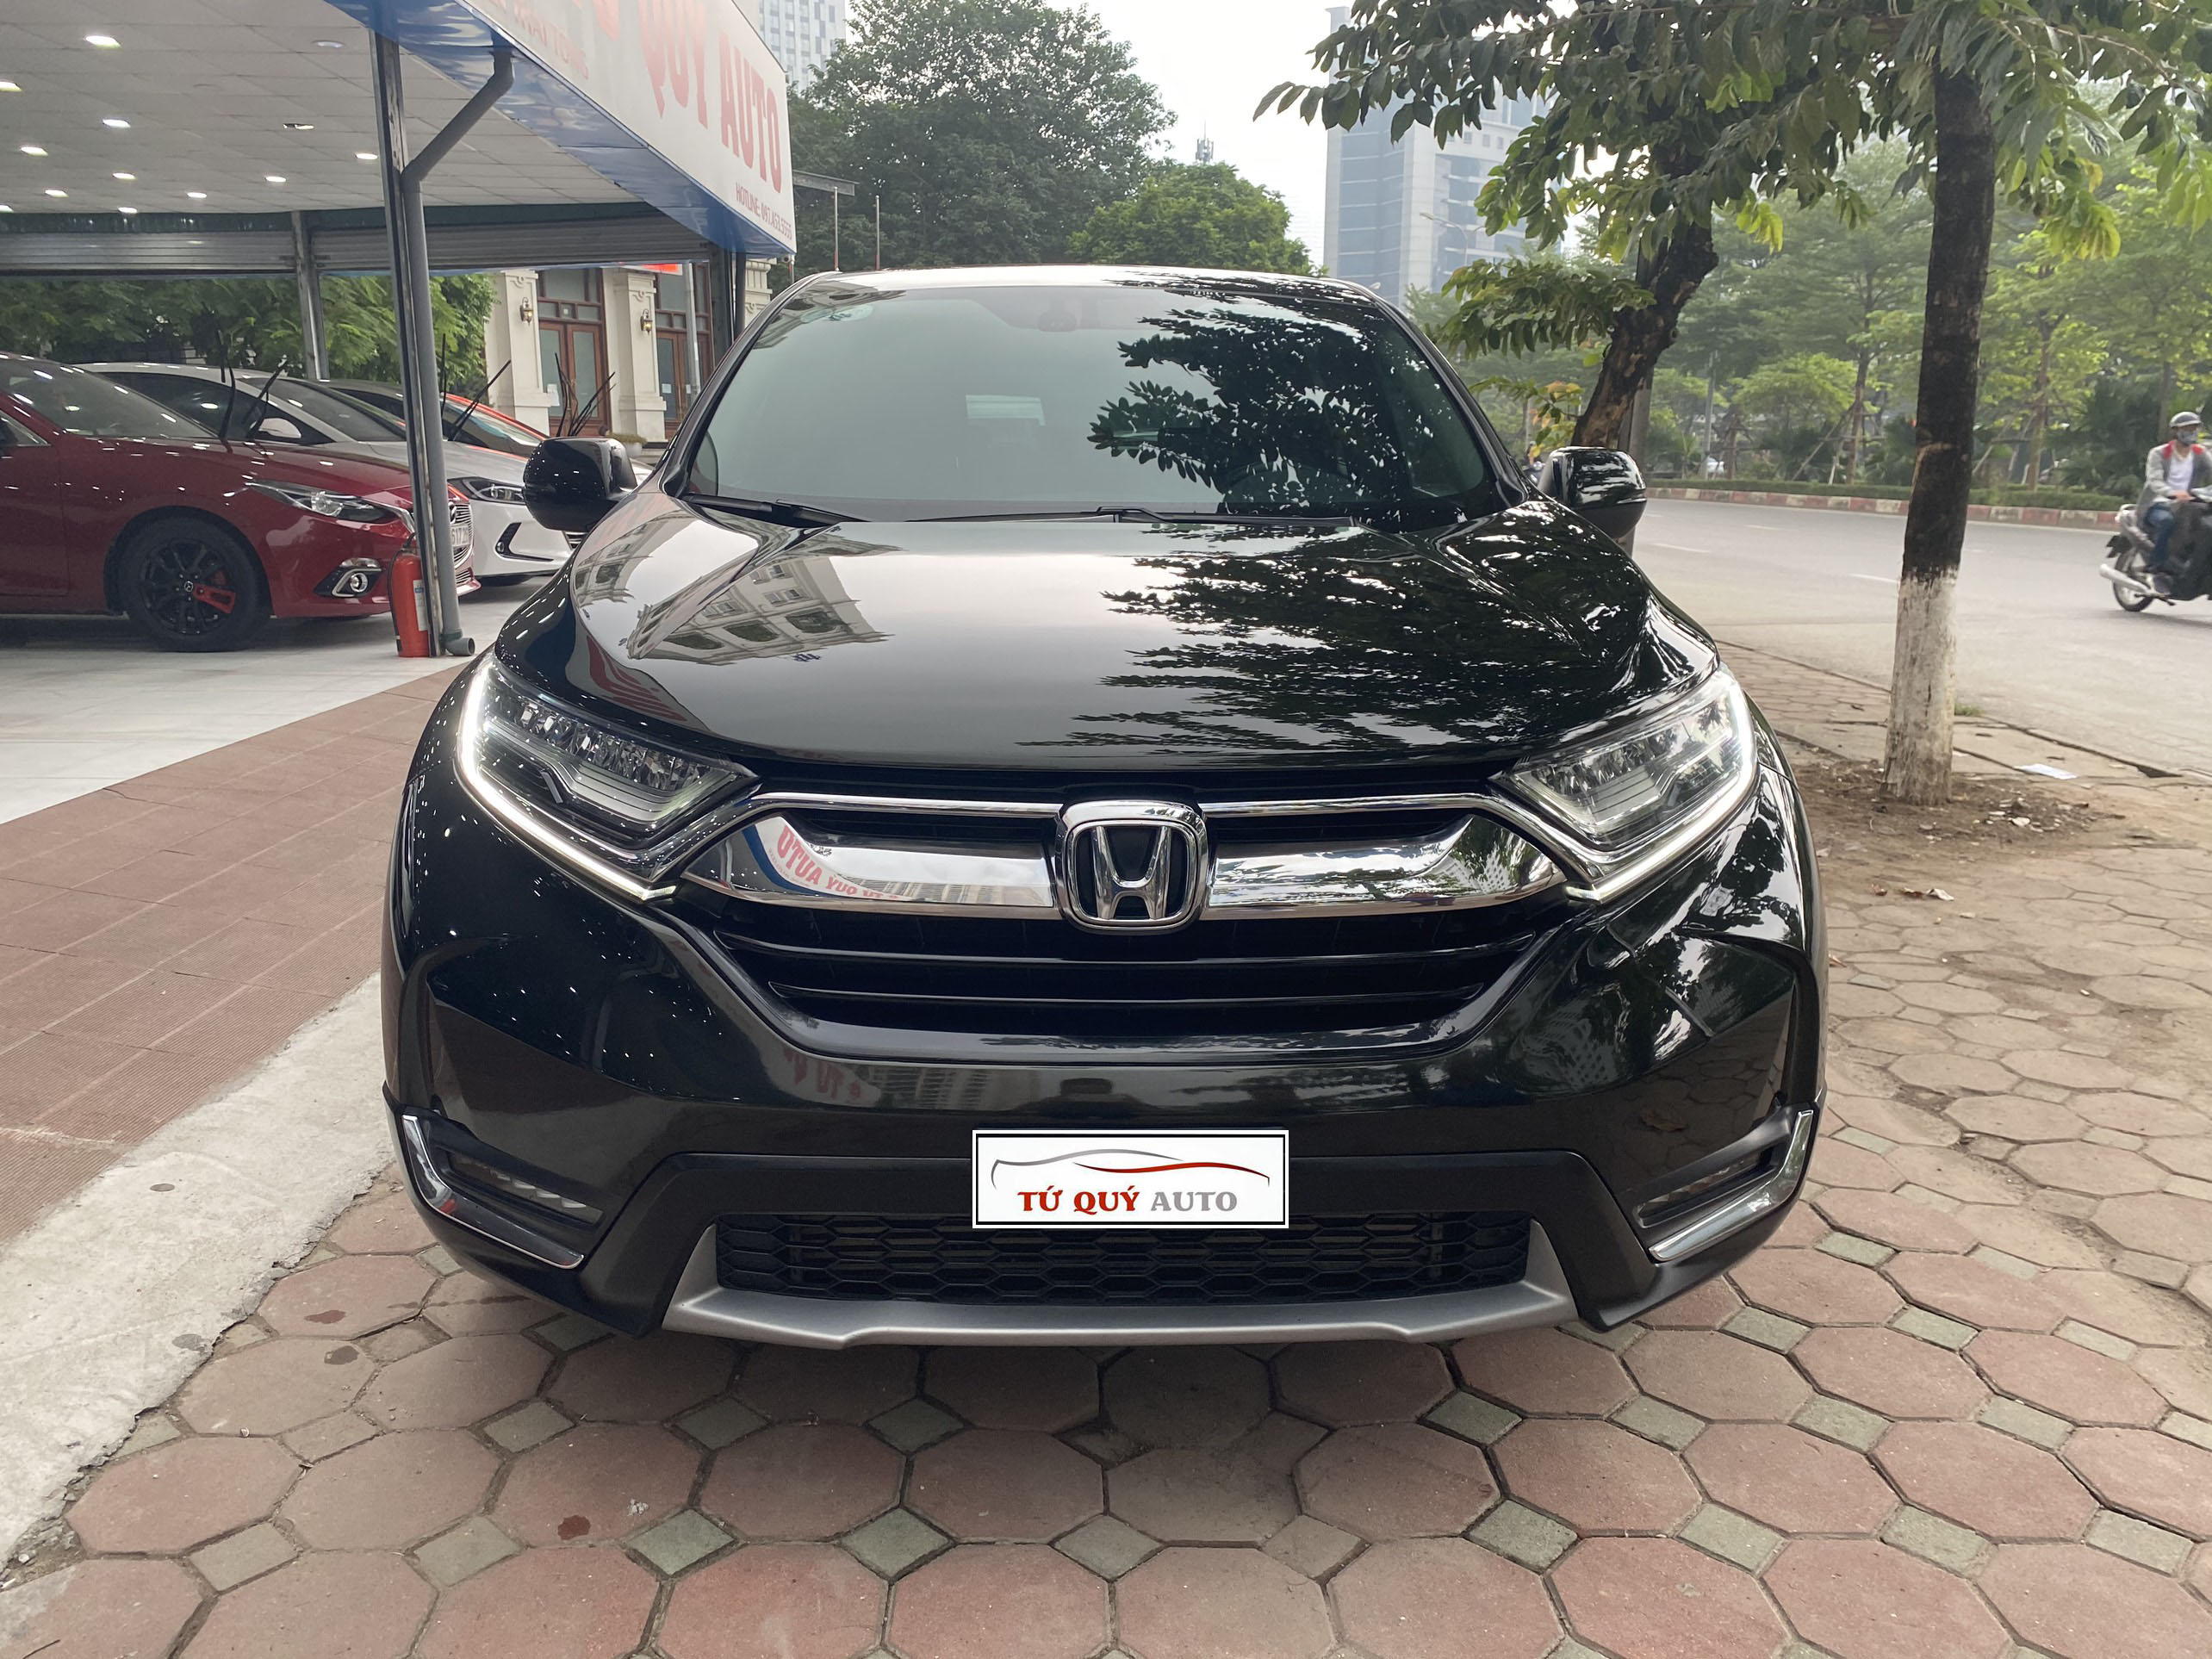 Có Nên Mua Honda CRV 2018 Phiên Bản Mới Không 